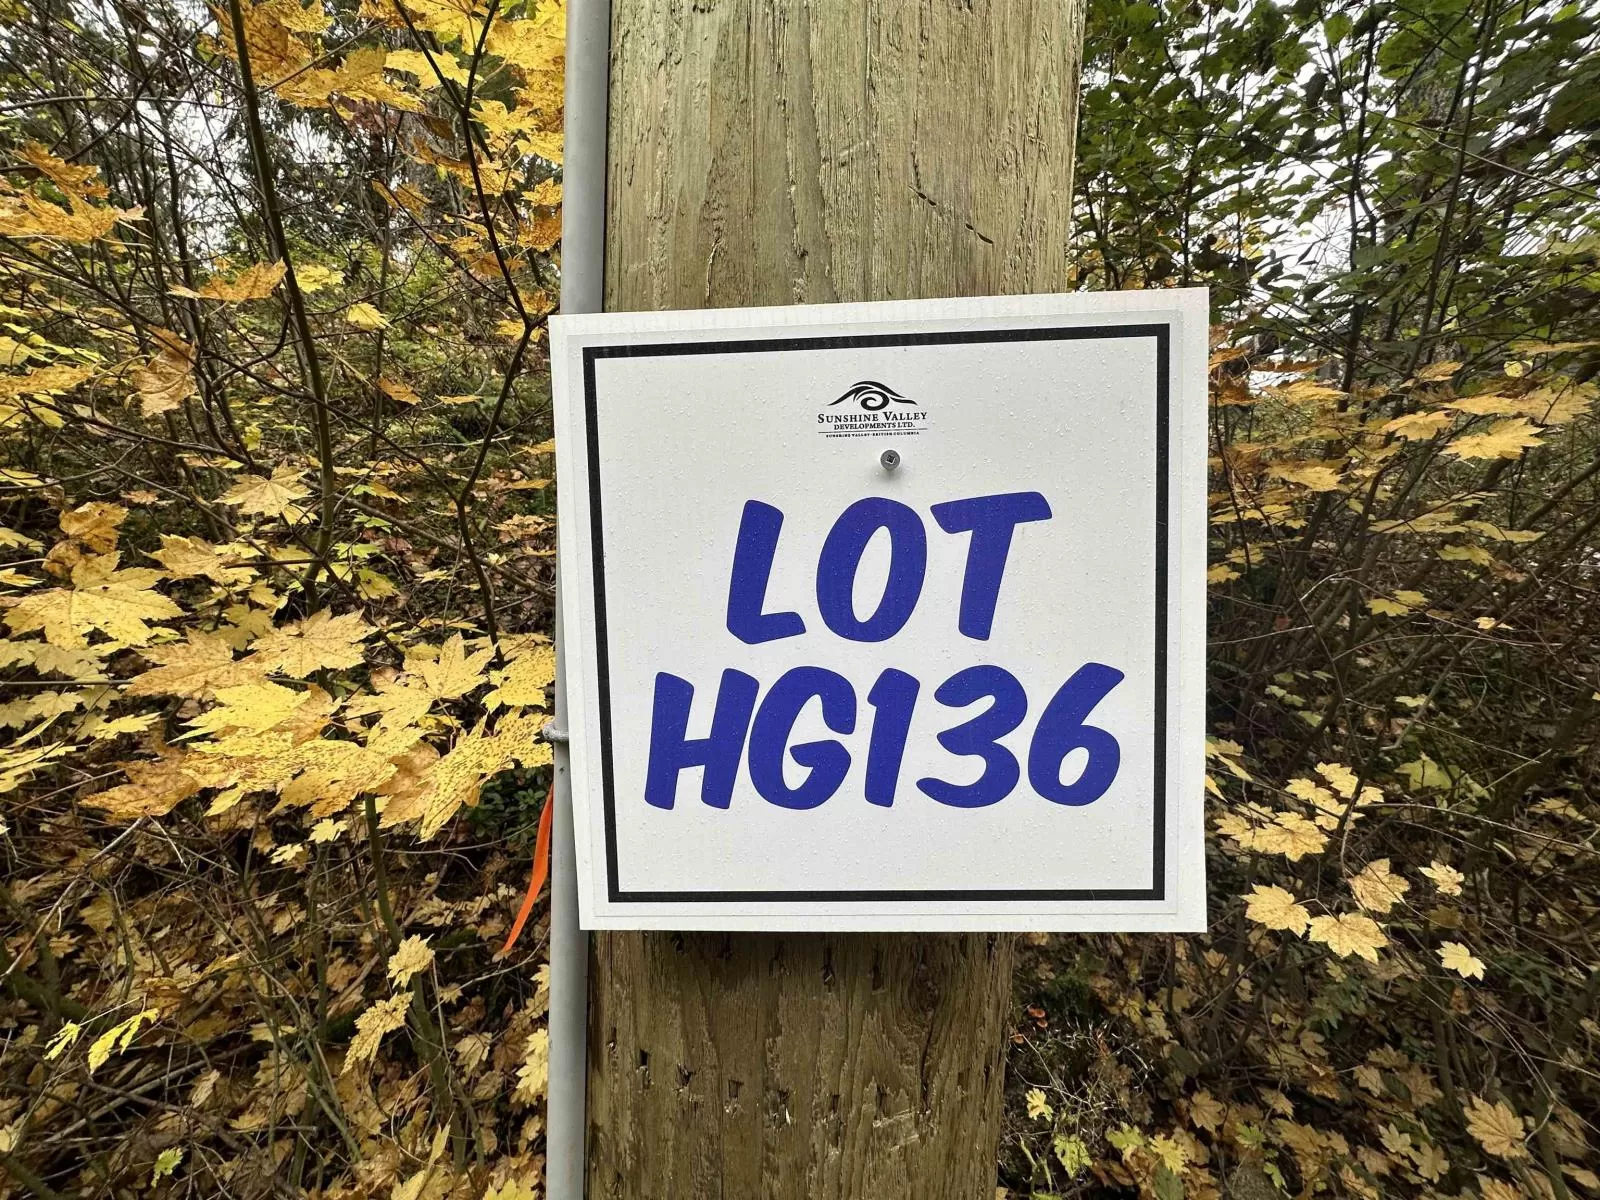 Hg136 Old Hope Princeton Highway, Hope, British Columbia V0X 1L0